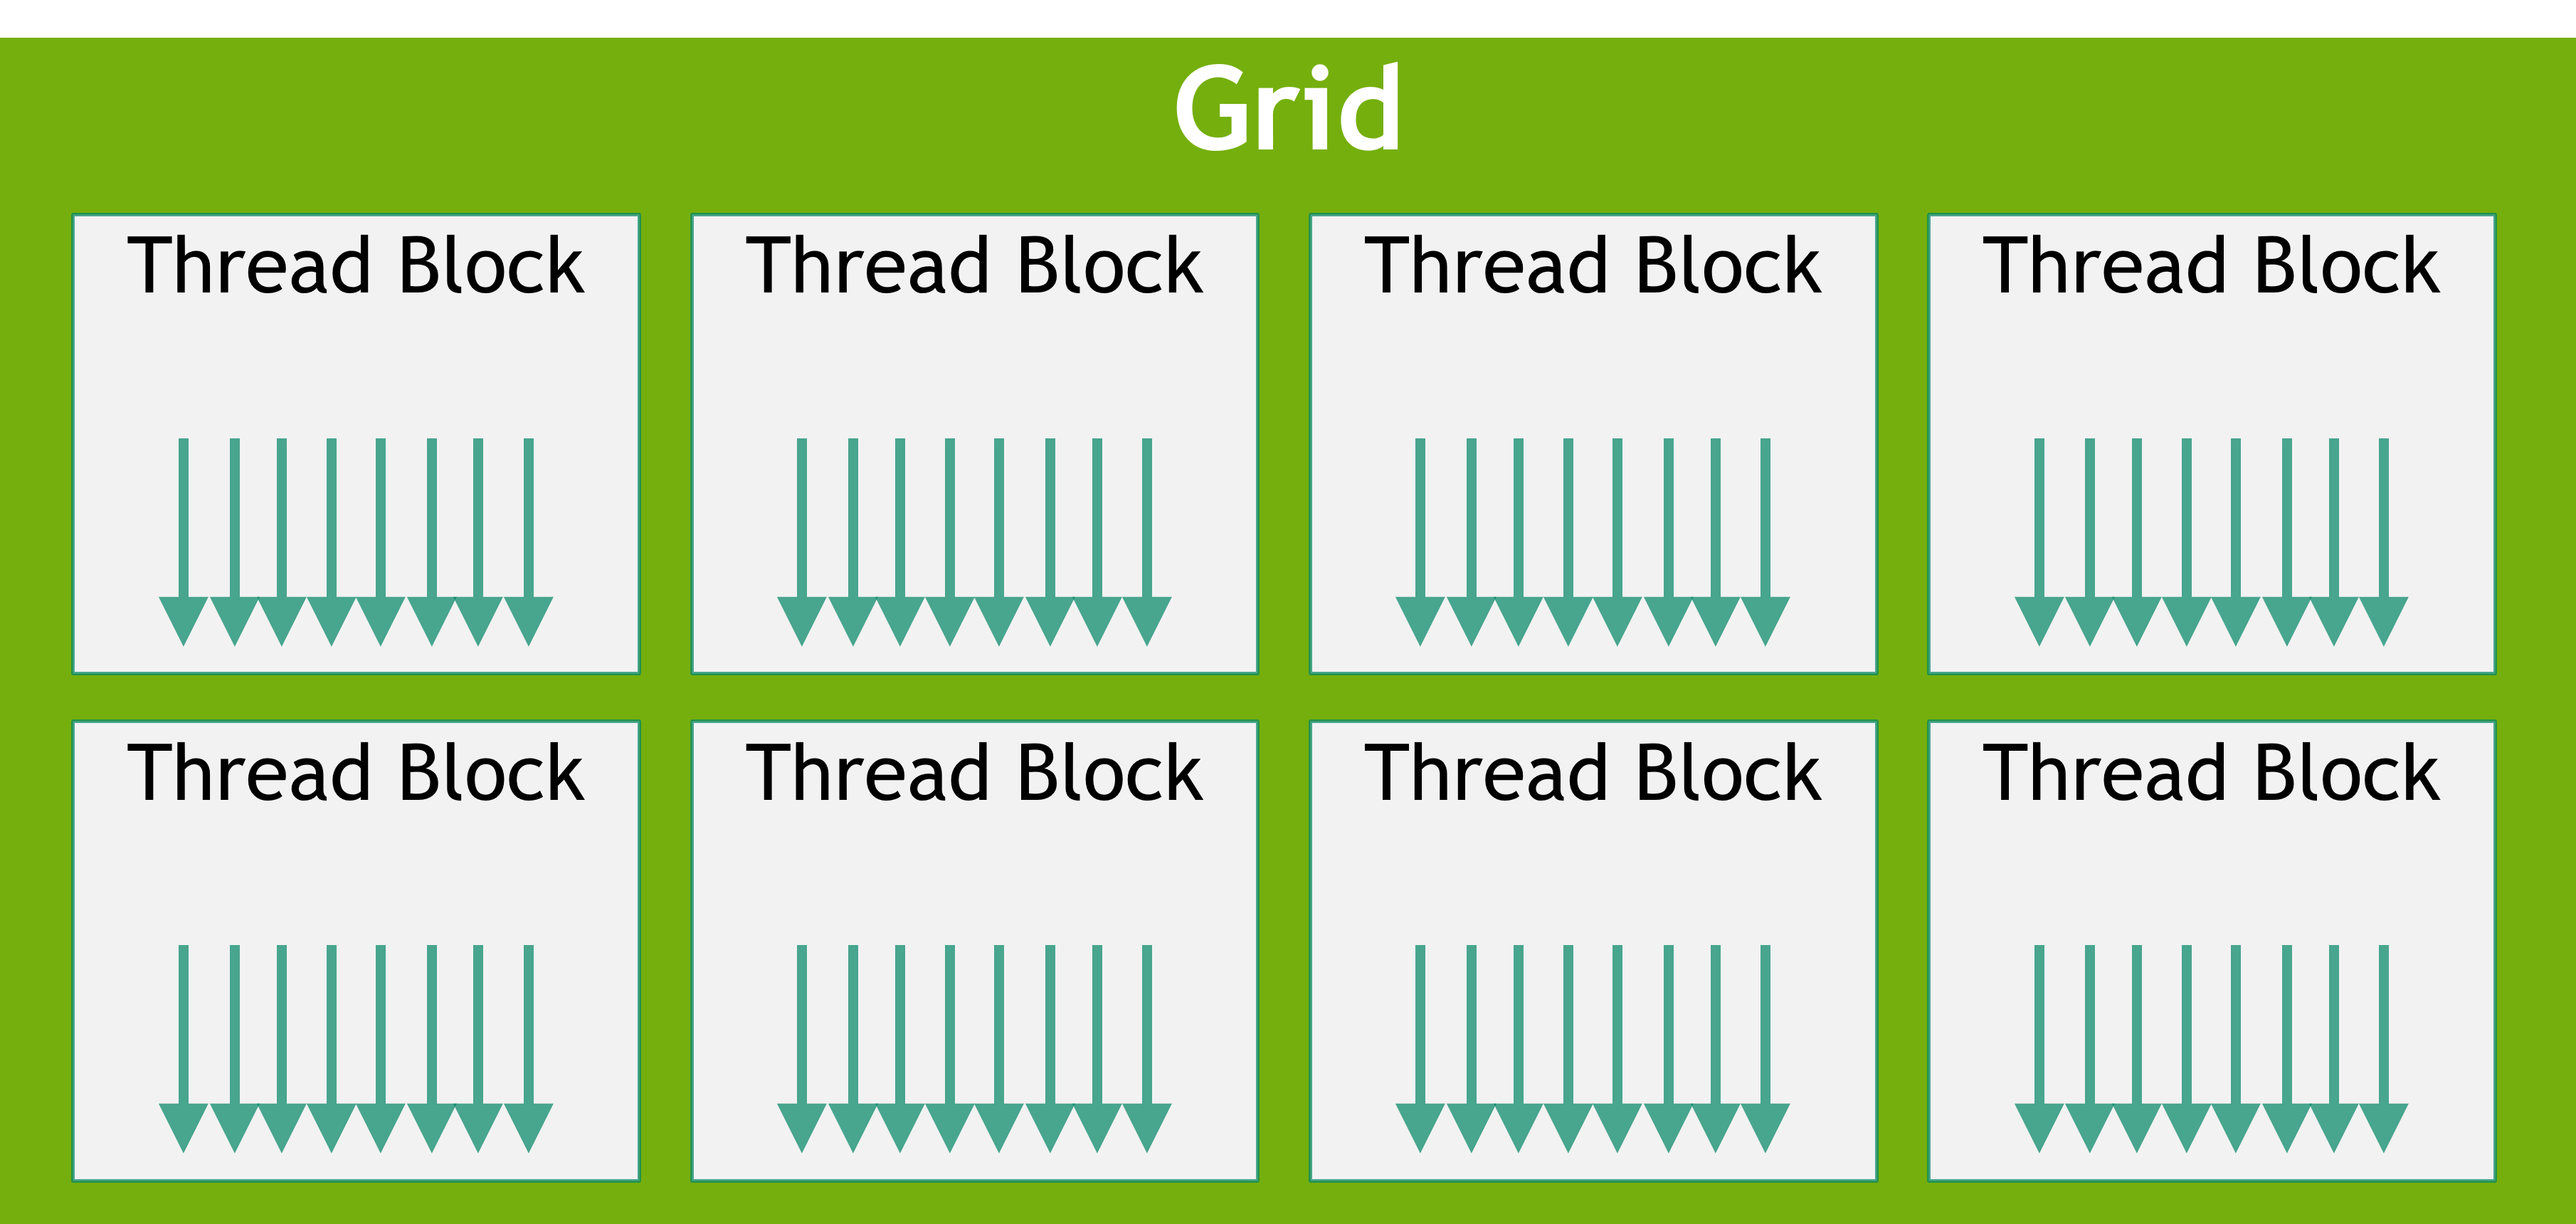 Grid of Thread Blocks